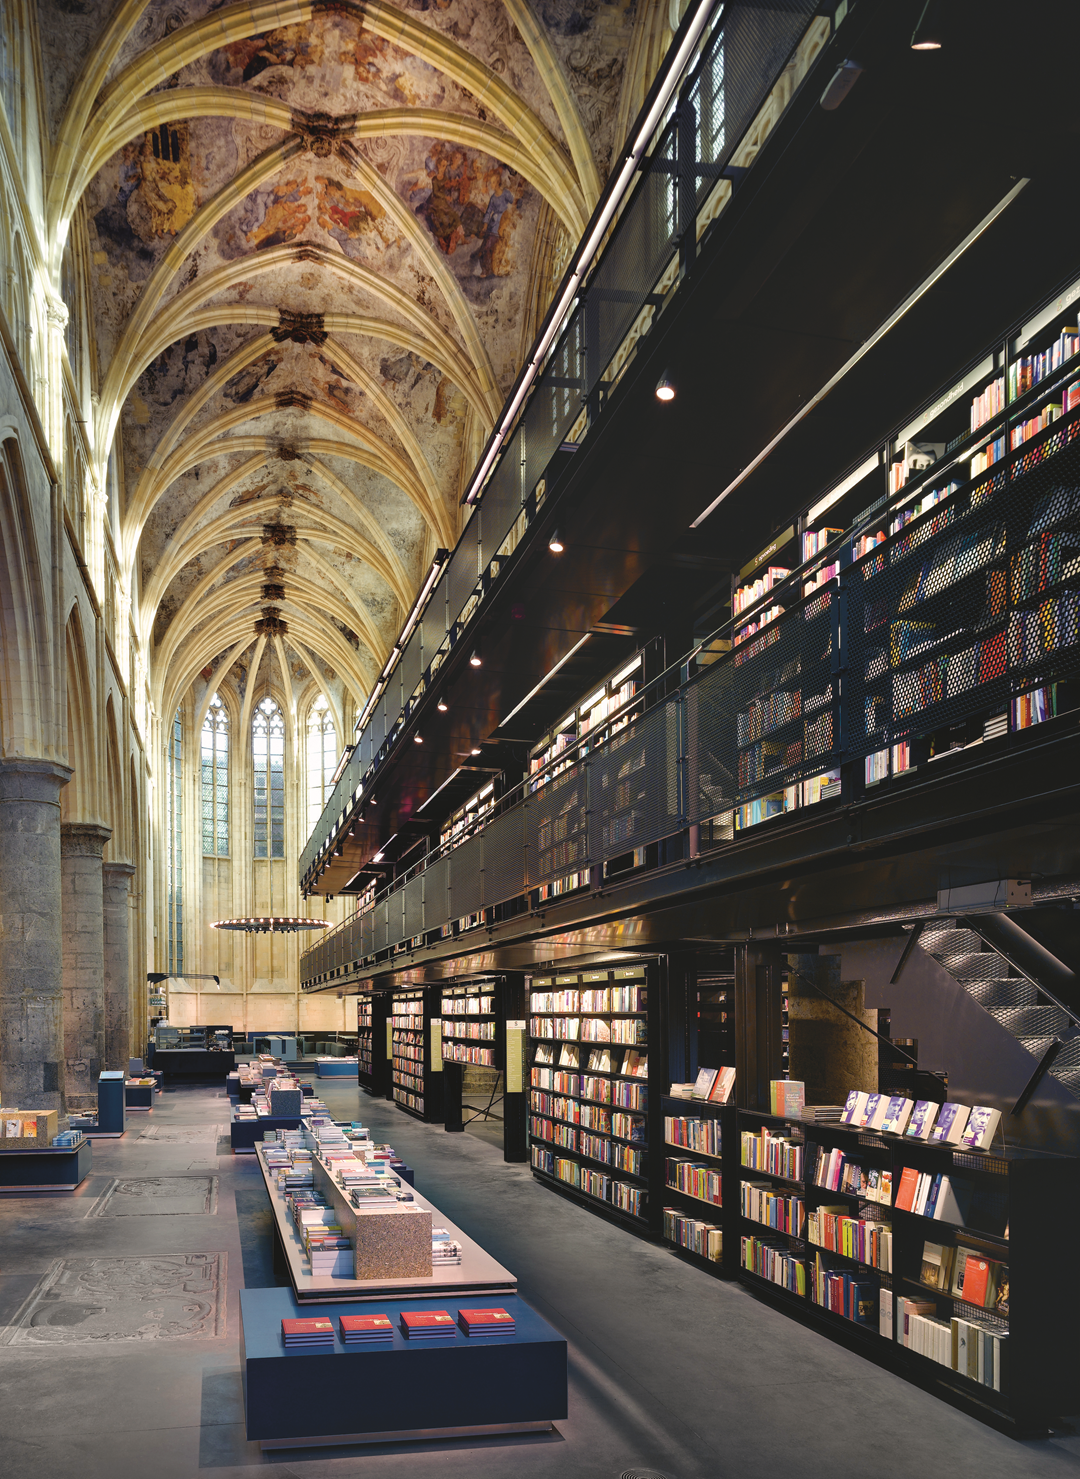 Boekhandel, Netherlands.